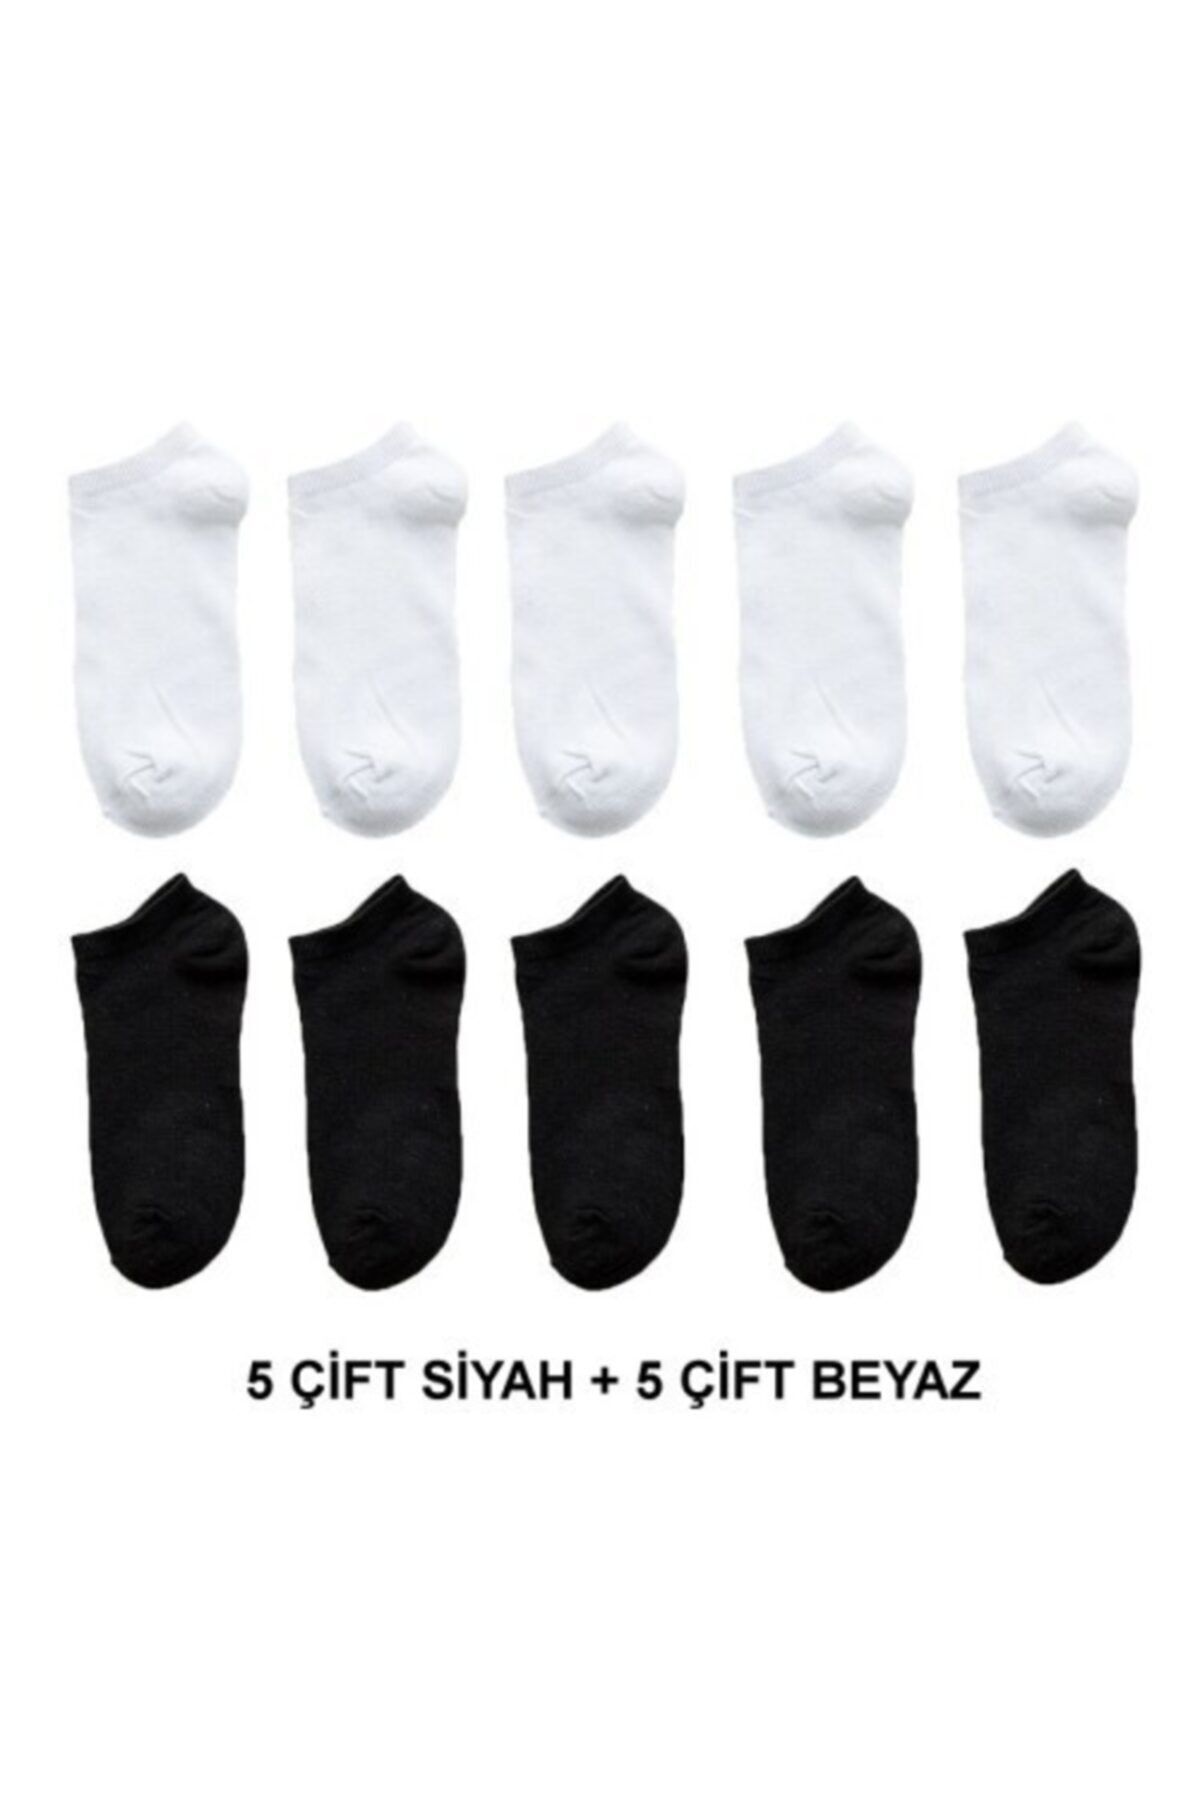 çorapmanya Kadın Siyah Beyaz Patik Çorap 10 Çift